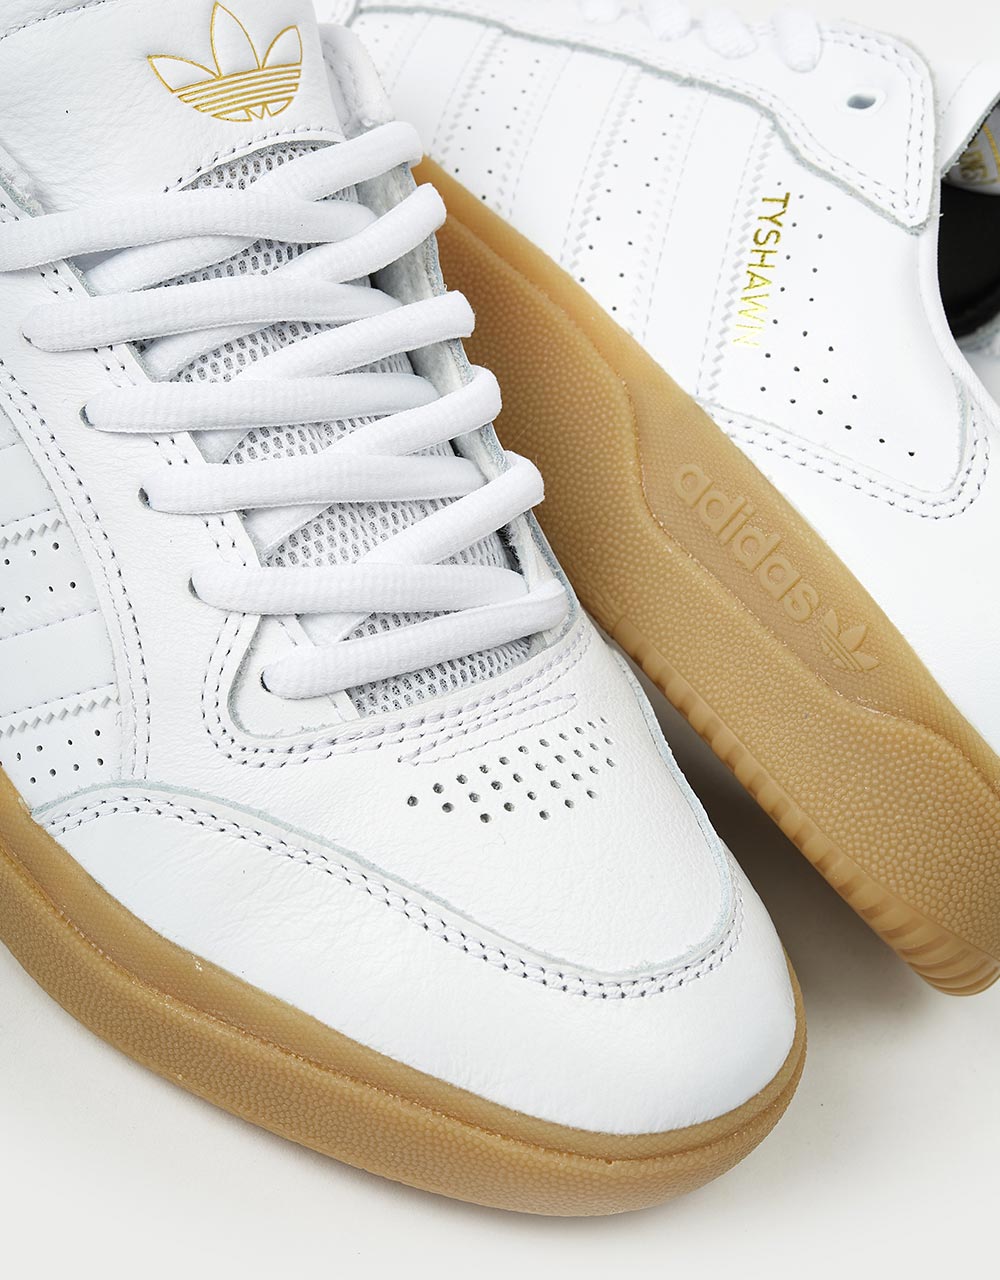 adidas Tyshawn Low Skate Shoes - White/White/Gum